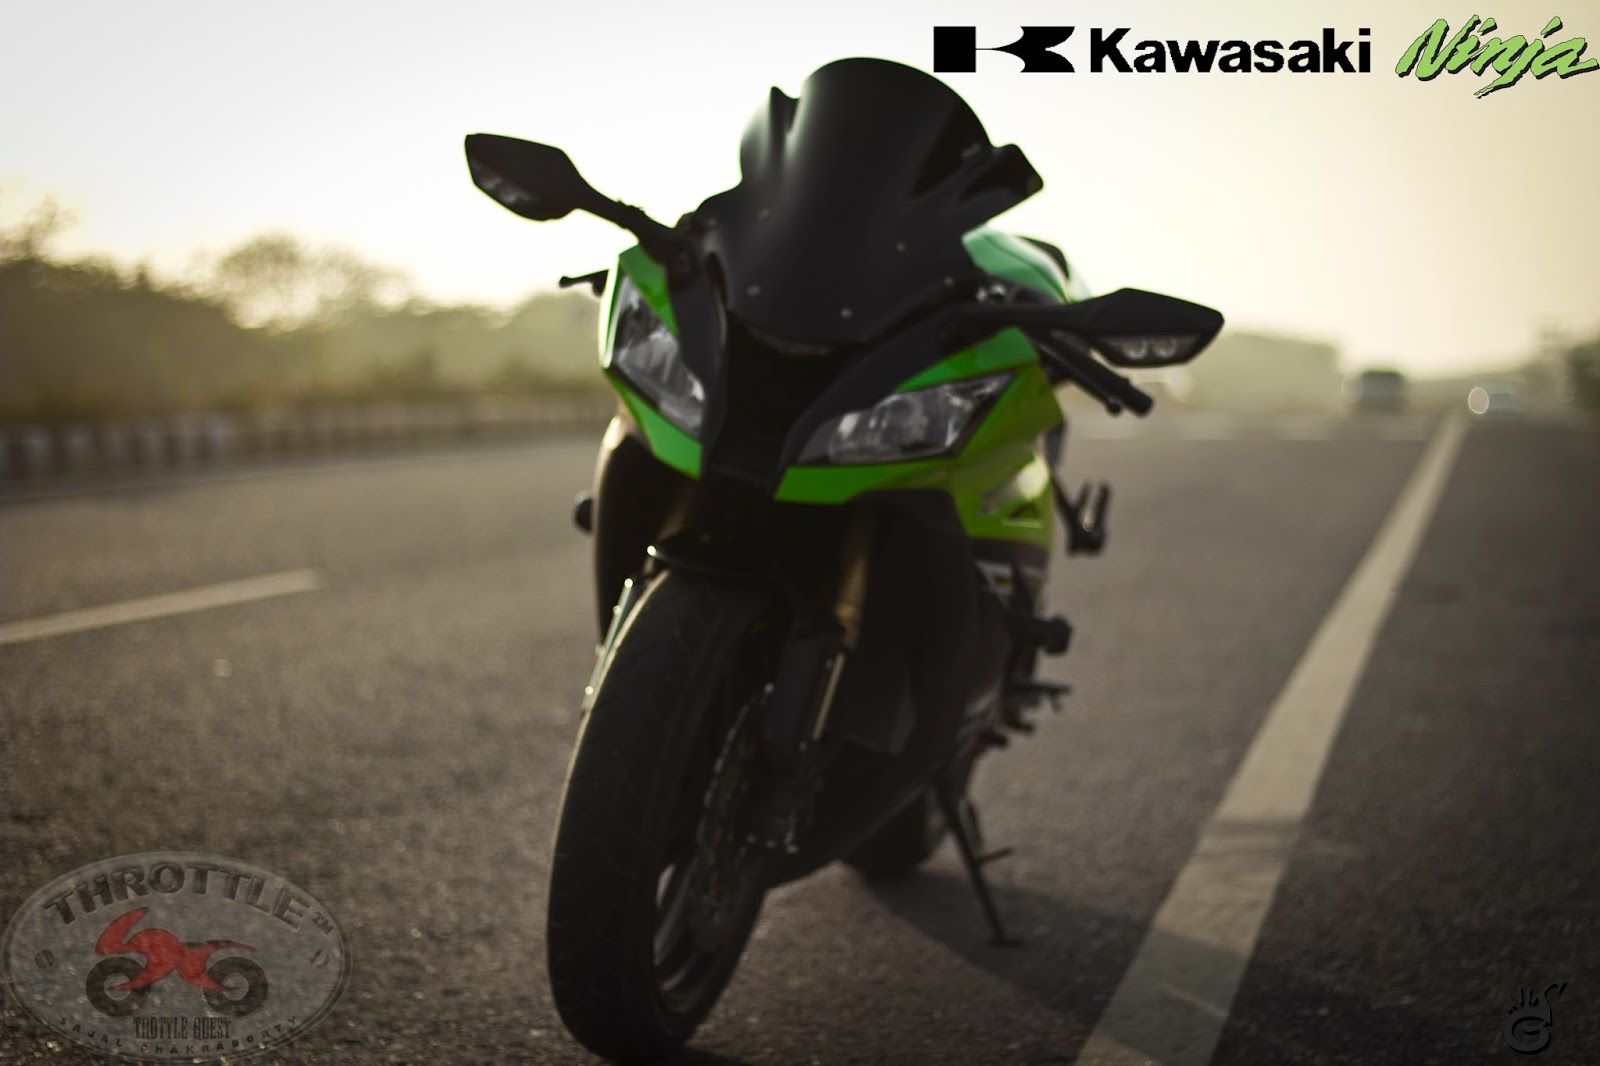 2014 Kawasaki Ninja ZX-10R - Ride ThrottleQuest